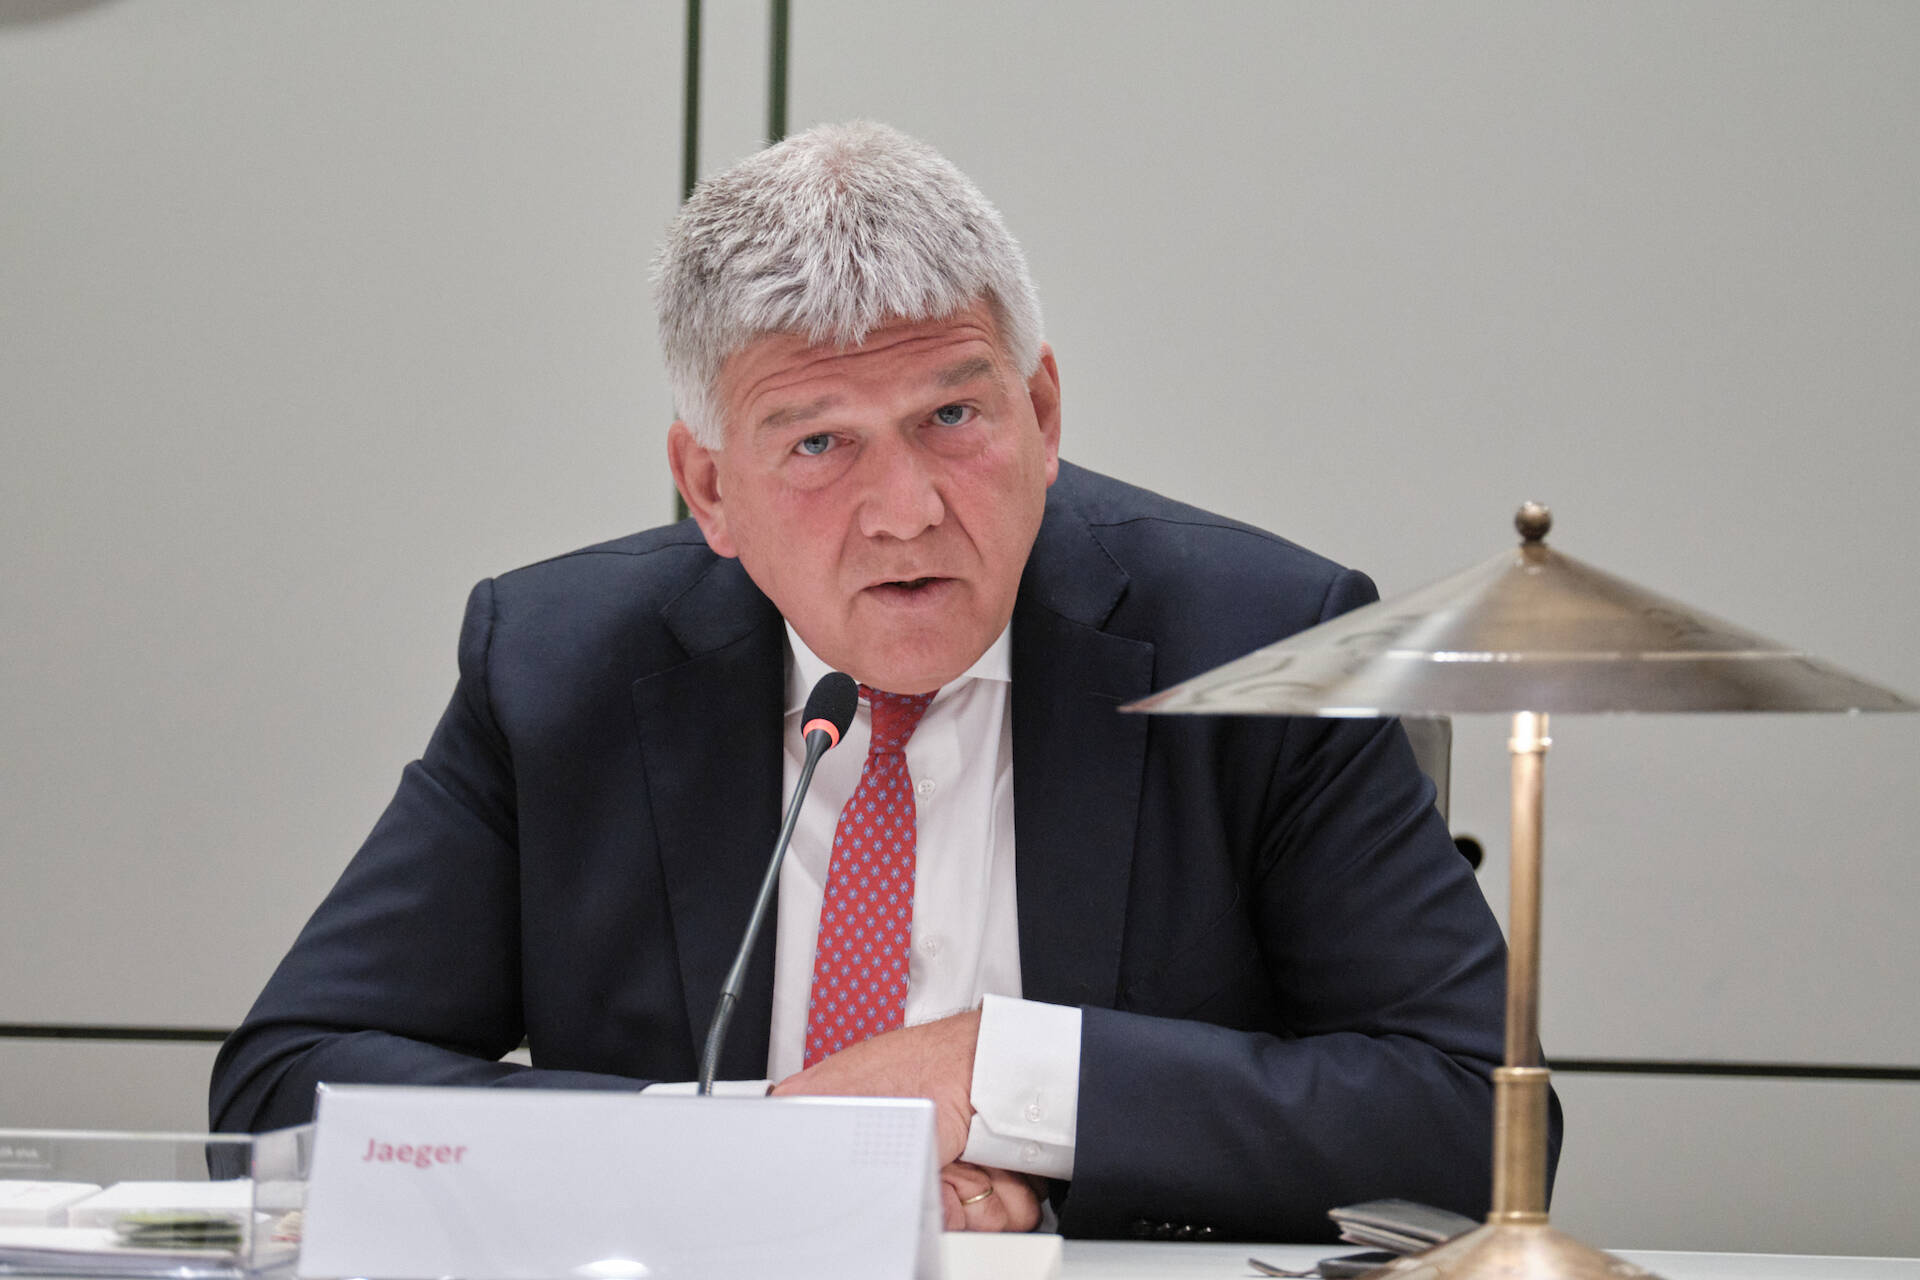 Wimar Jaeger, waarnemend burgemeester van Scherpenzeel